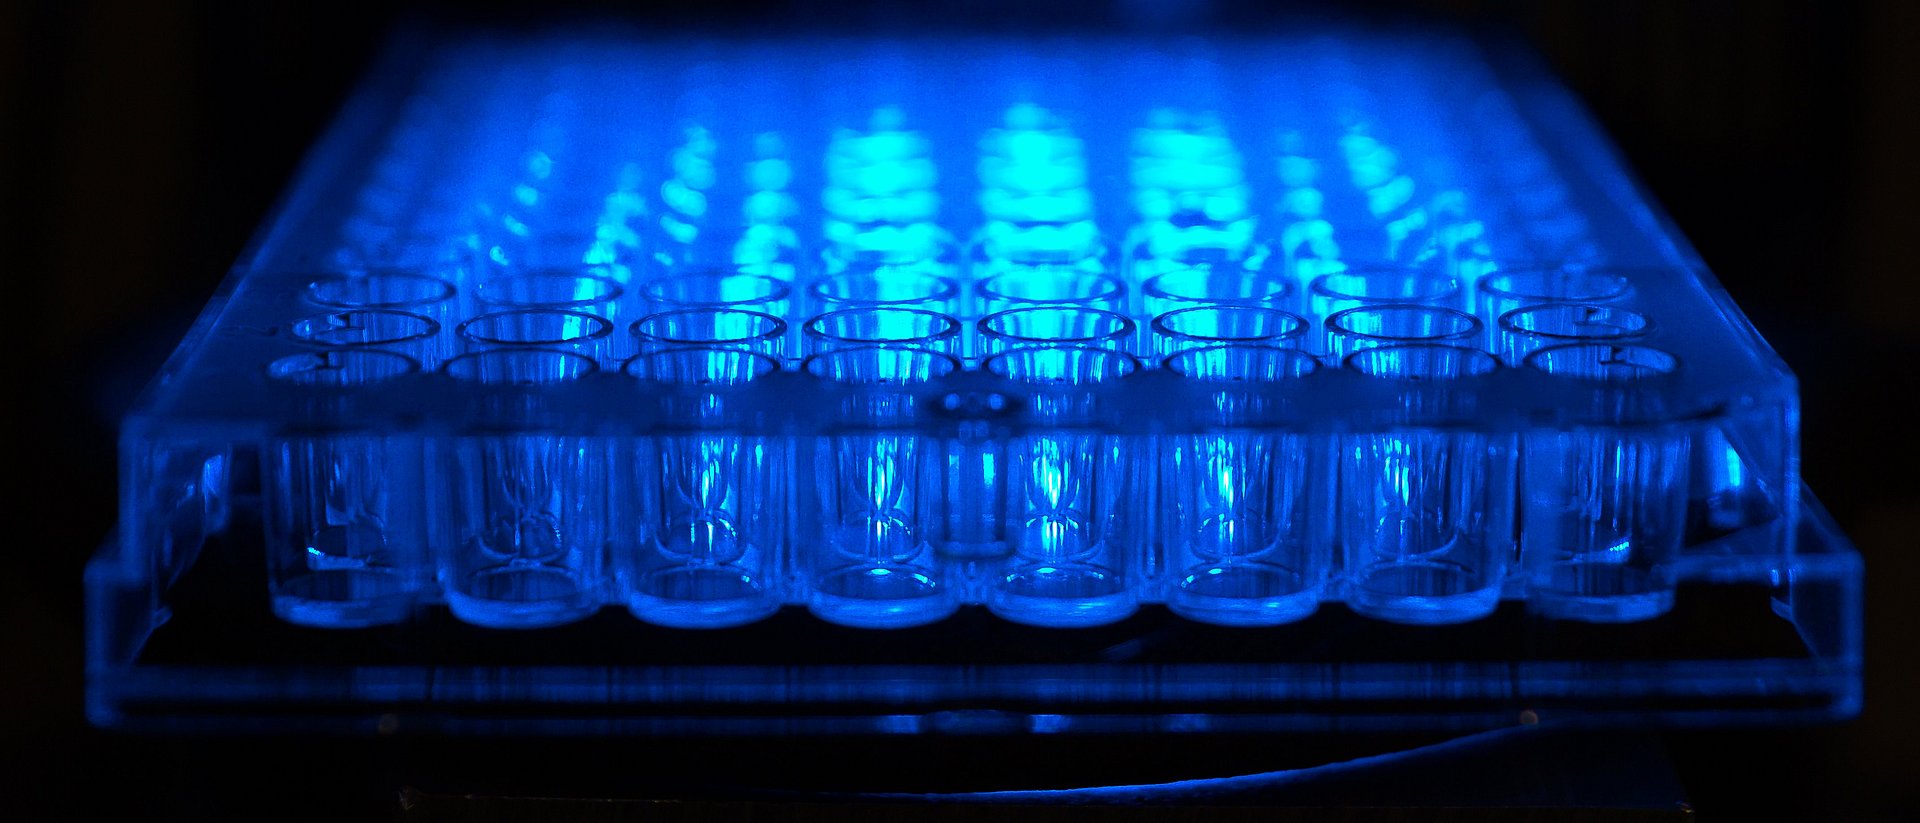 Experimental setup for blue light catalysis.